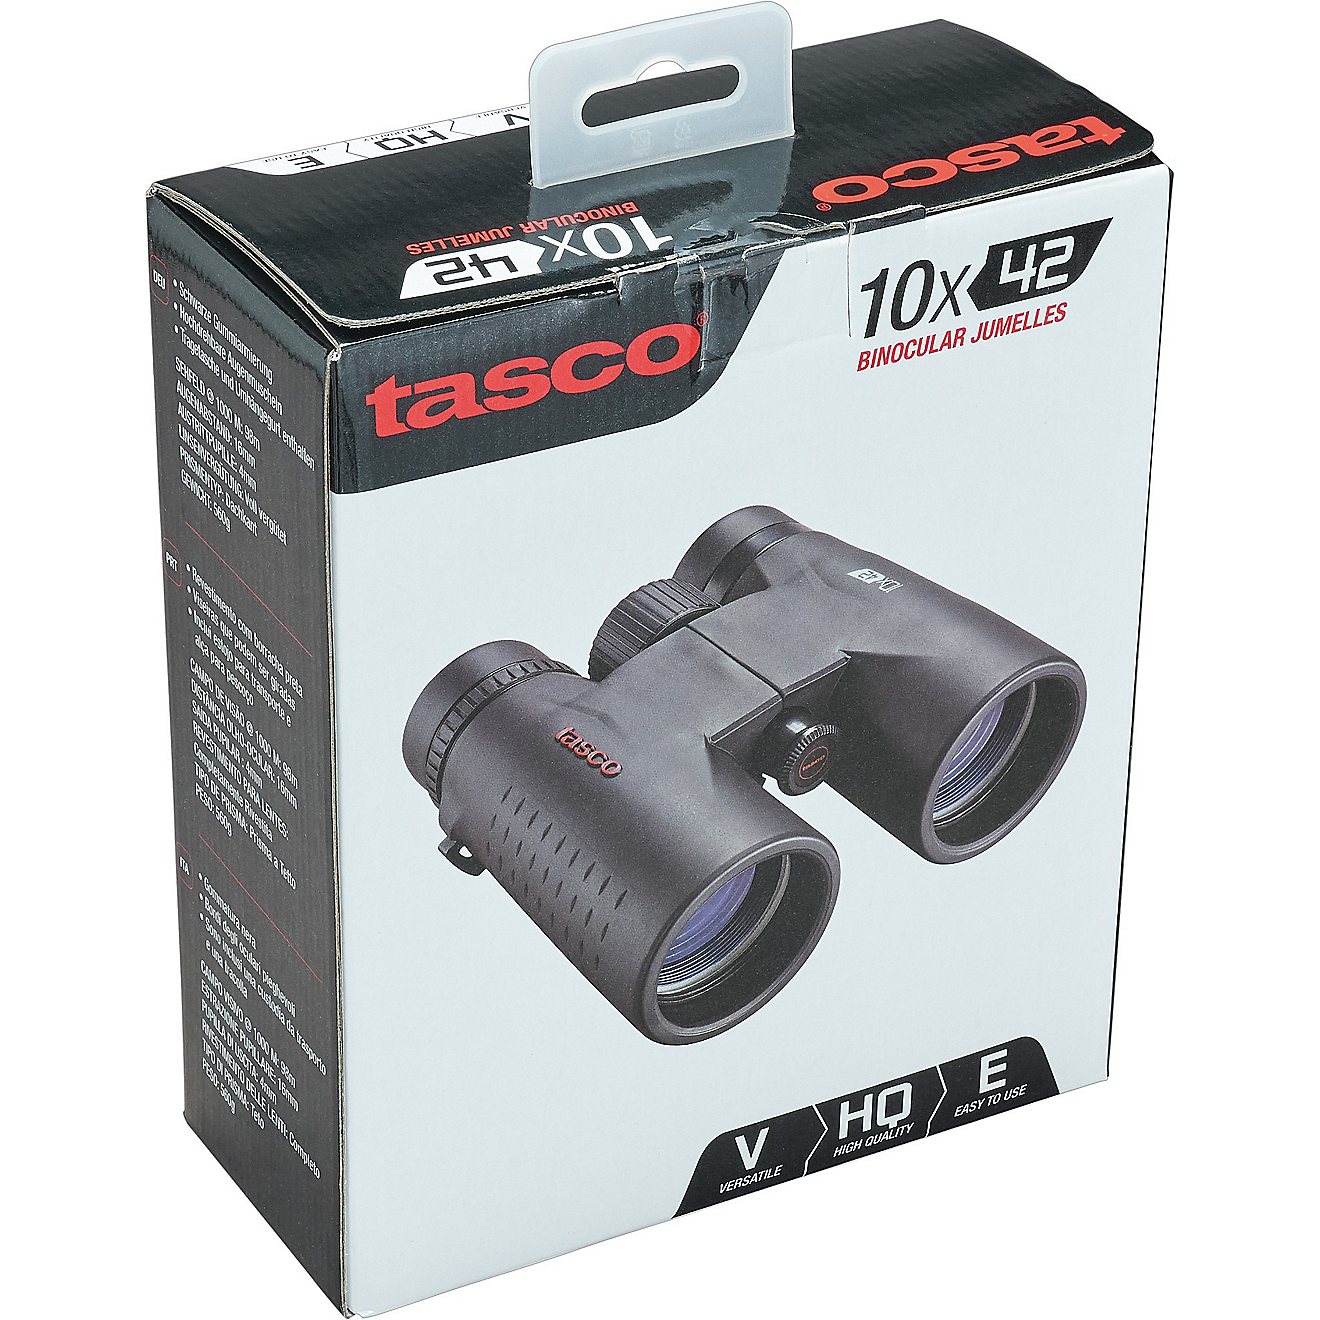 Tasco 10 x 42 Essential Binoculars                                                                                               - view number 7